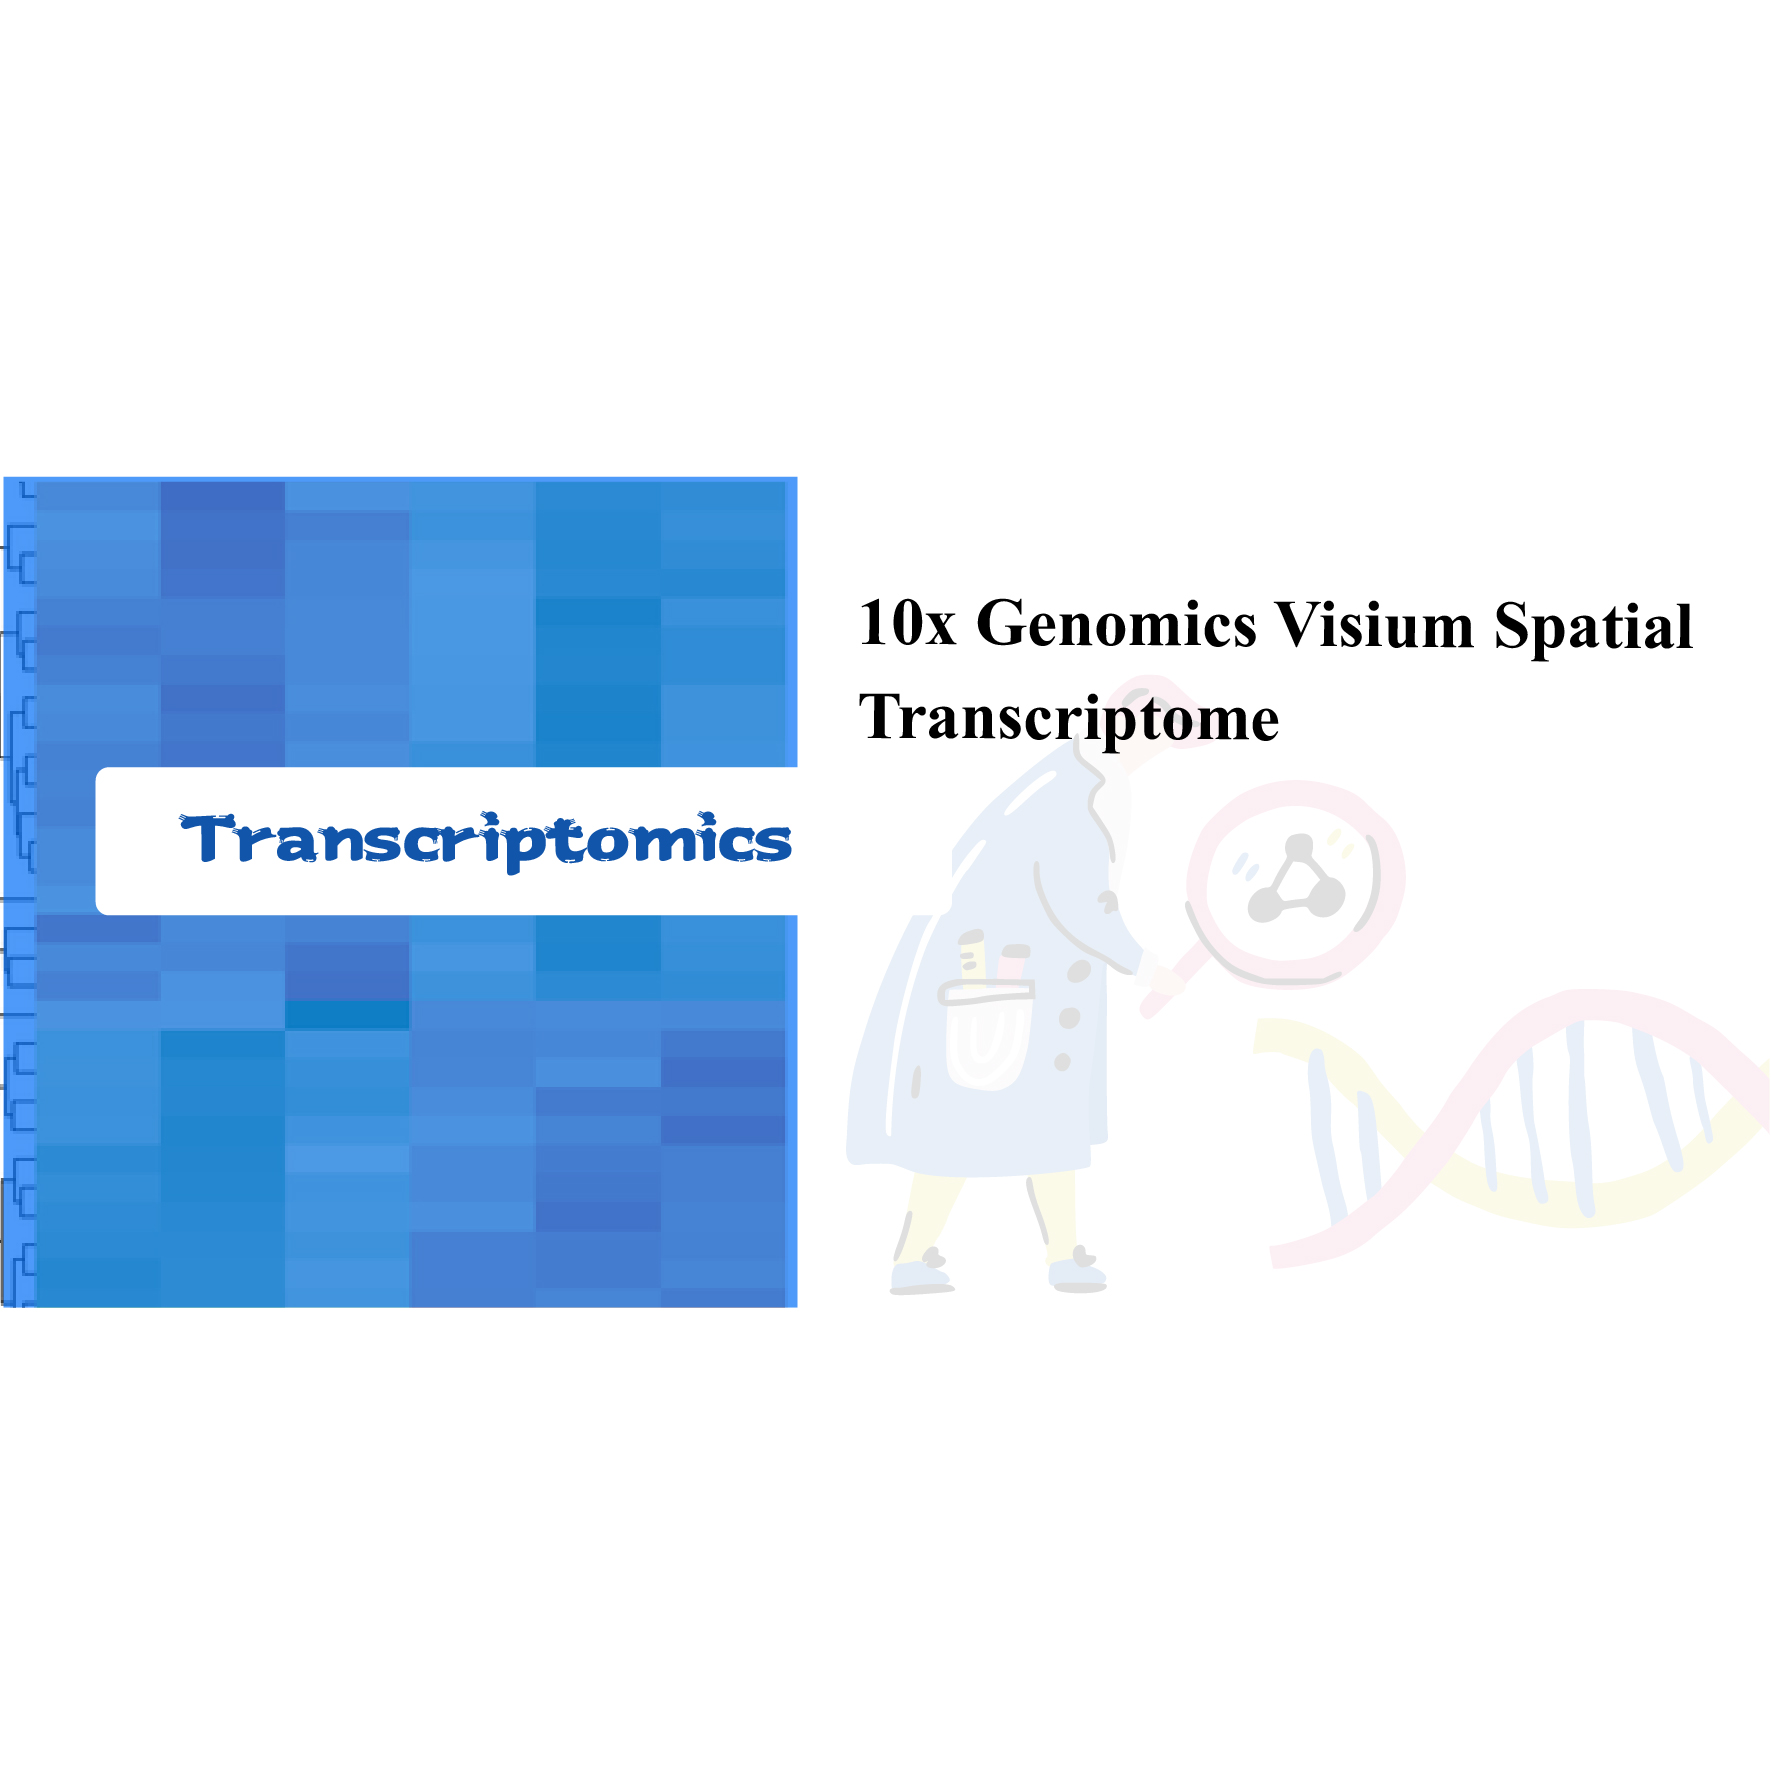 10x Transkriptom Spatial Visium Genomics